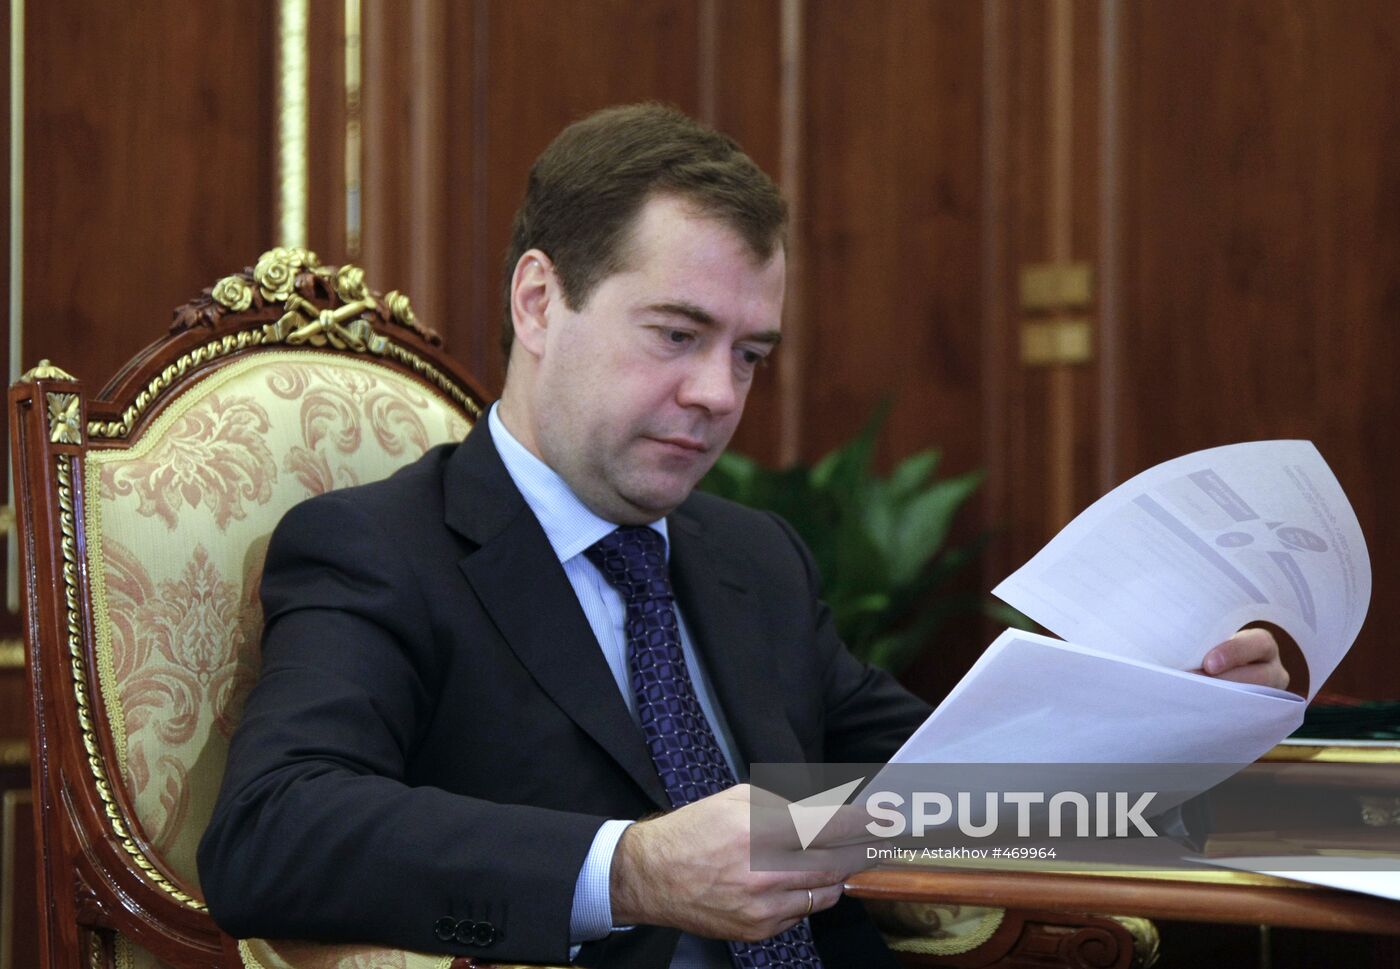 October 5, 2009. Dmitry Medvedev chairs meetings